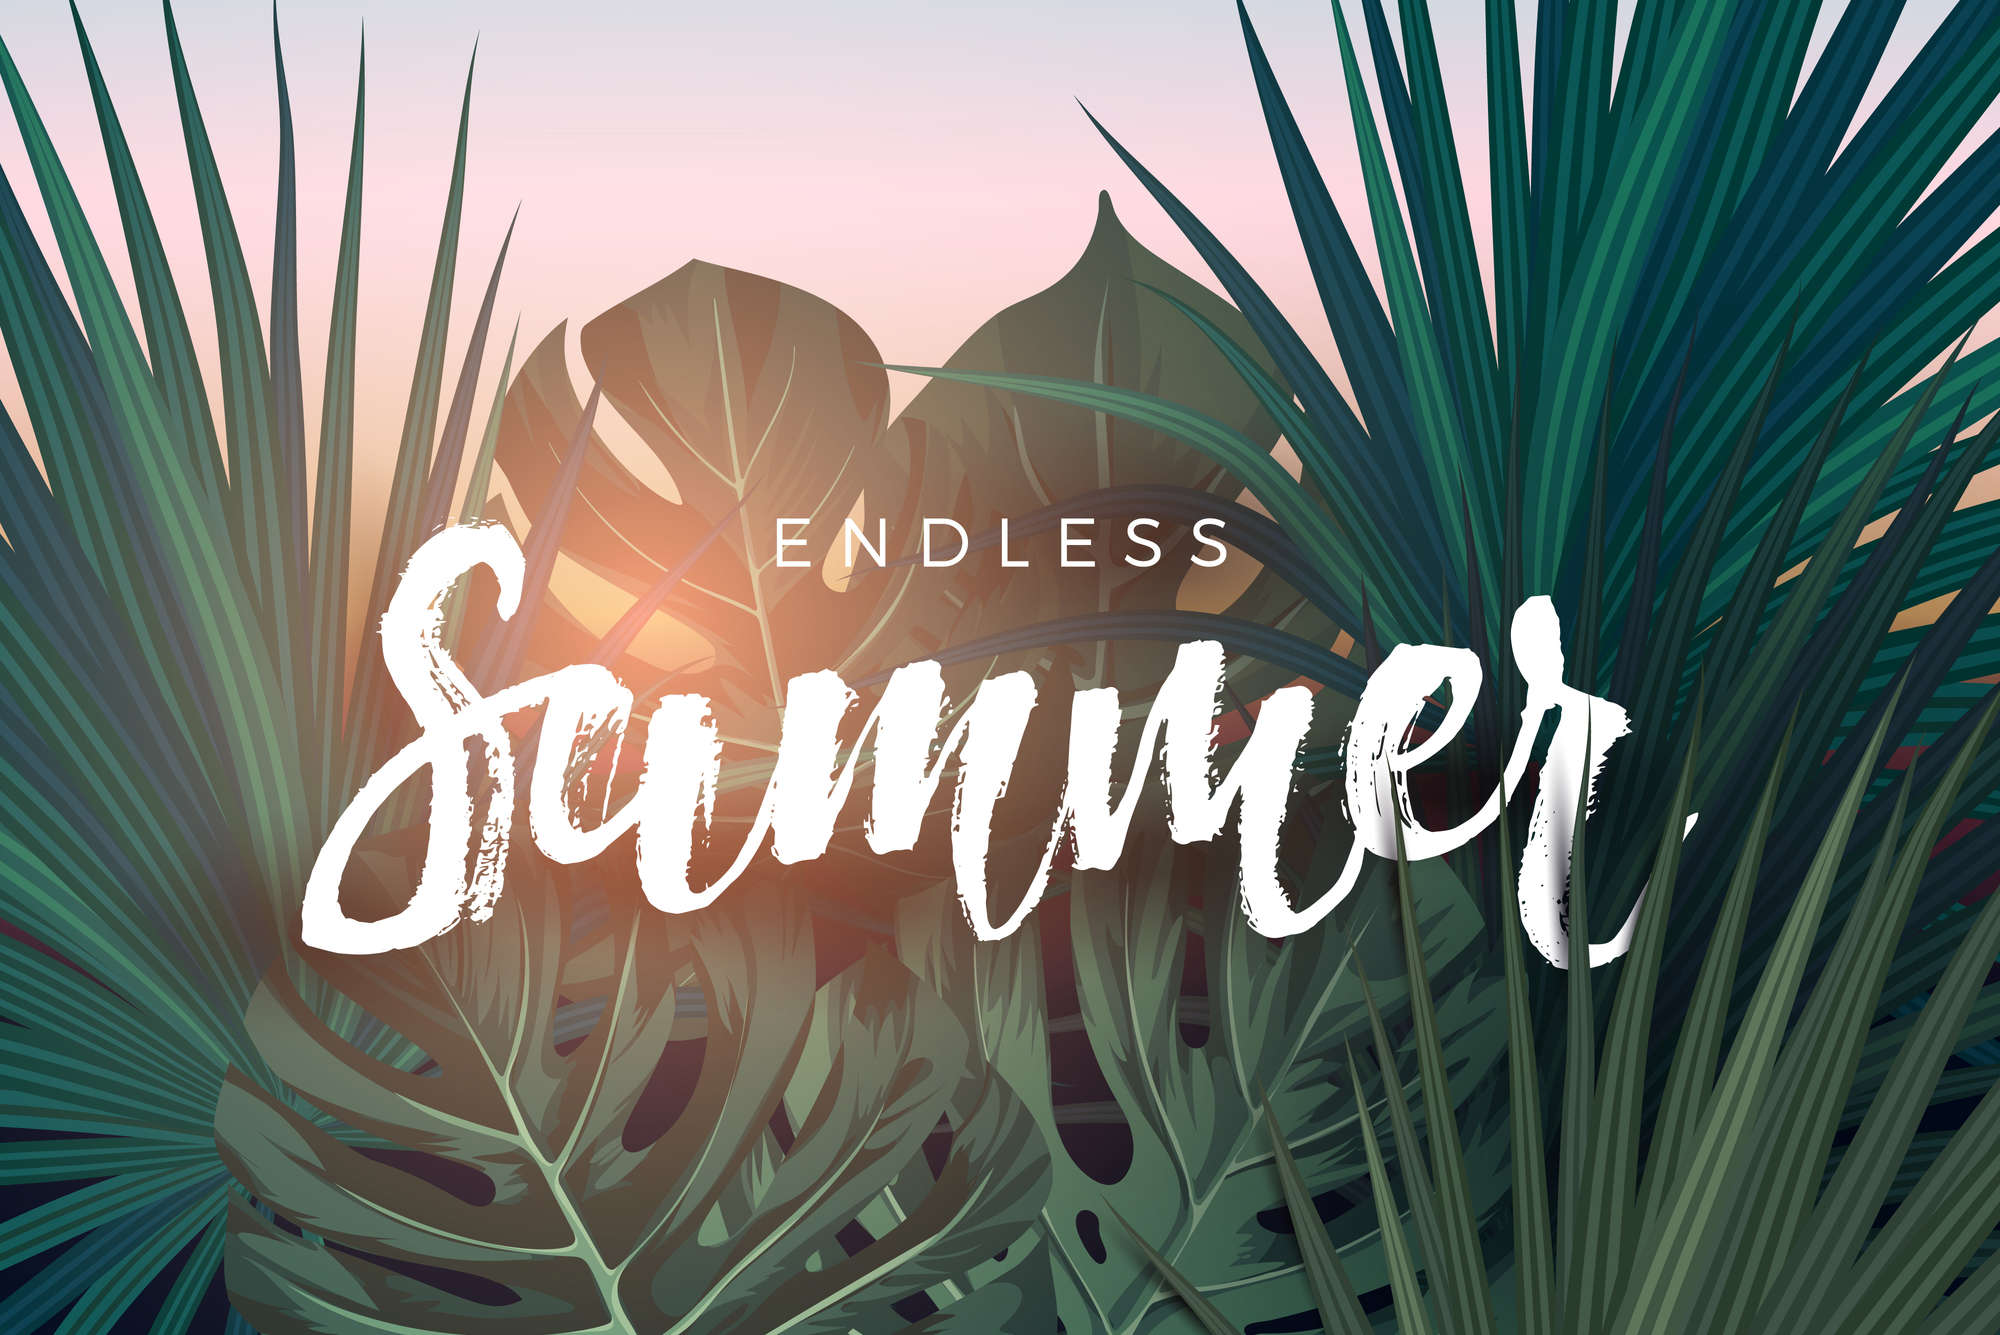             Grafisch behangpapier "Endless Summer" op premium gladde vliesstof
        